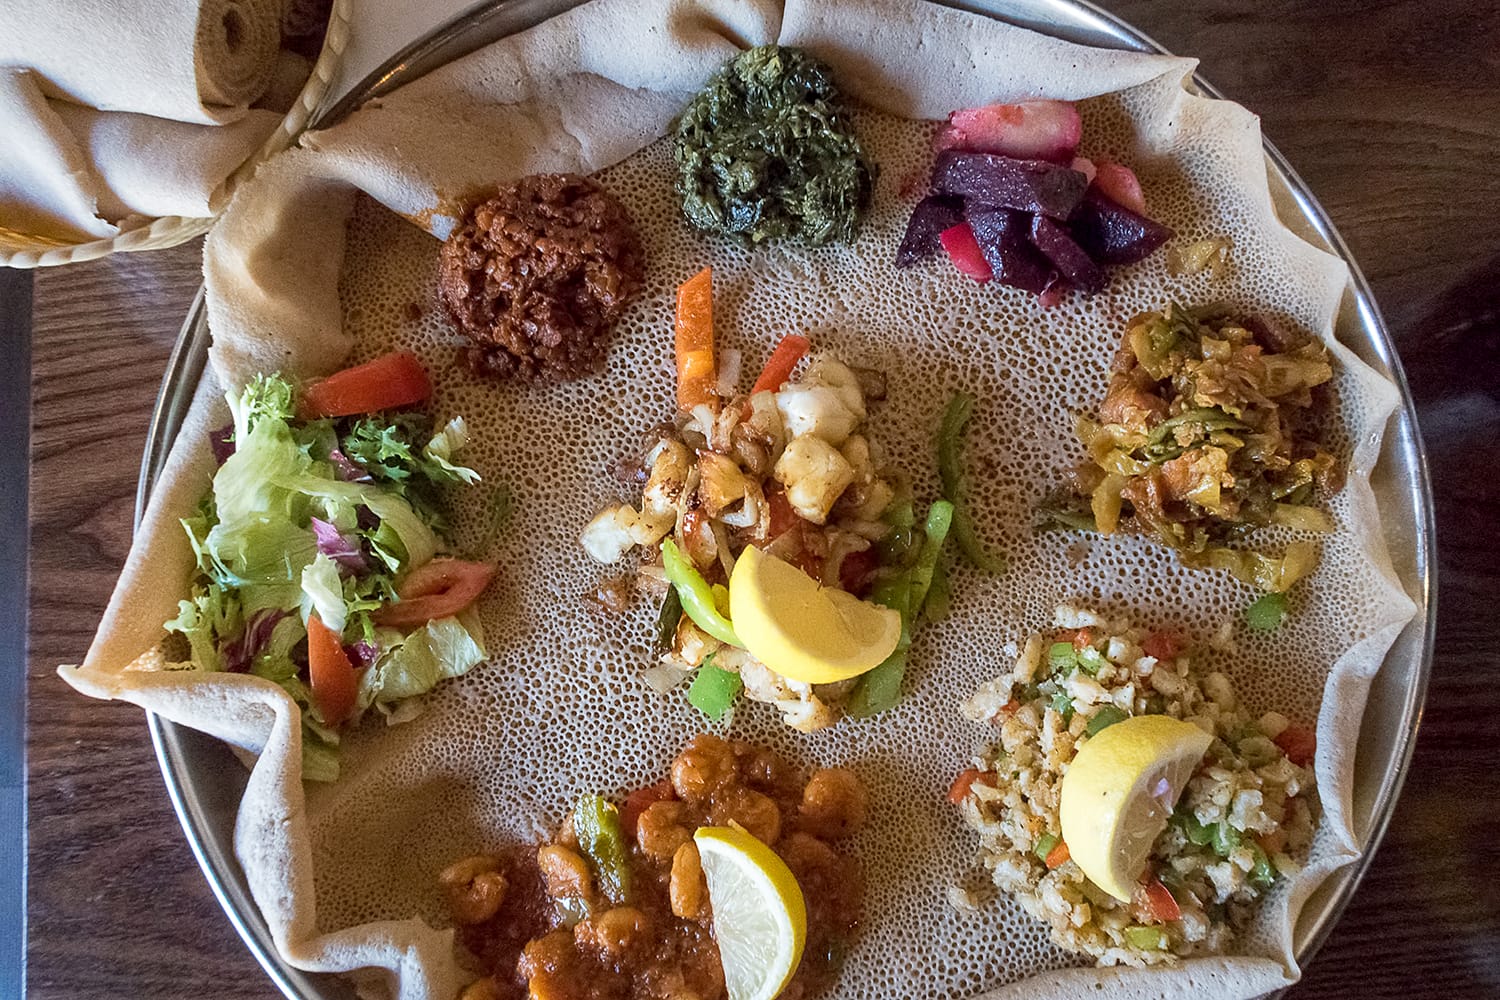 Το Injera είναι ένα προζύμι φτιαγμένο από αλεύρι τεφ. Είναι το εθνικό πιάτο της Αιθιοπίας, της Ερυθραίας, της Σομαλίας και του Τζιμπουτί